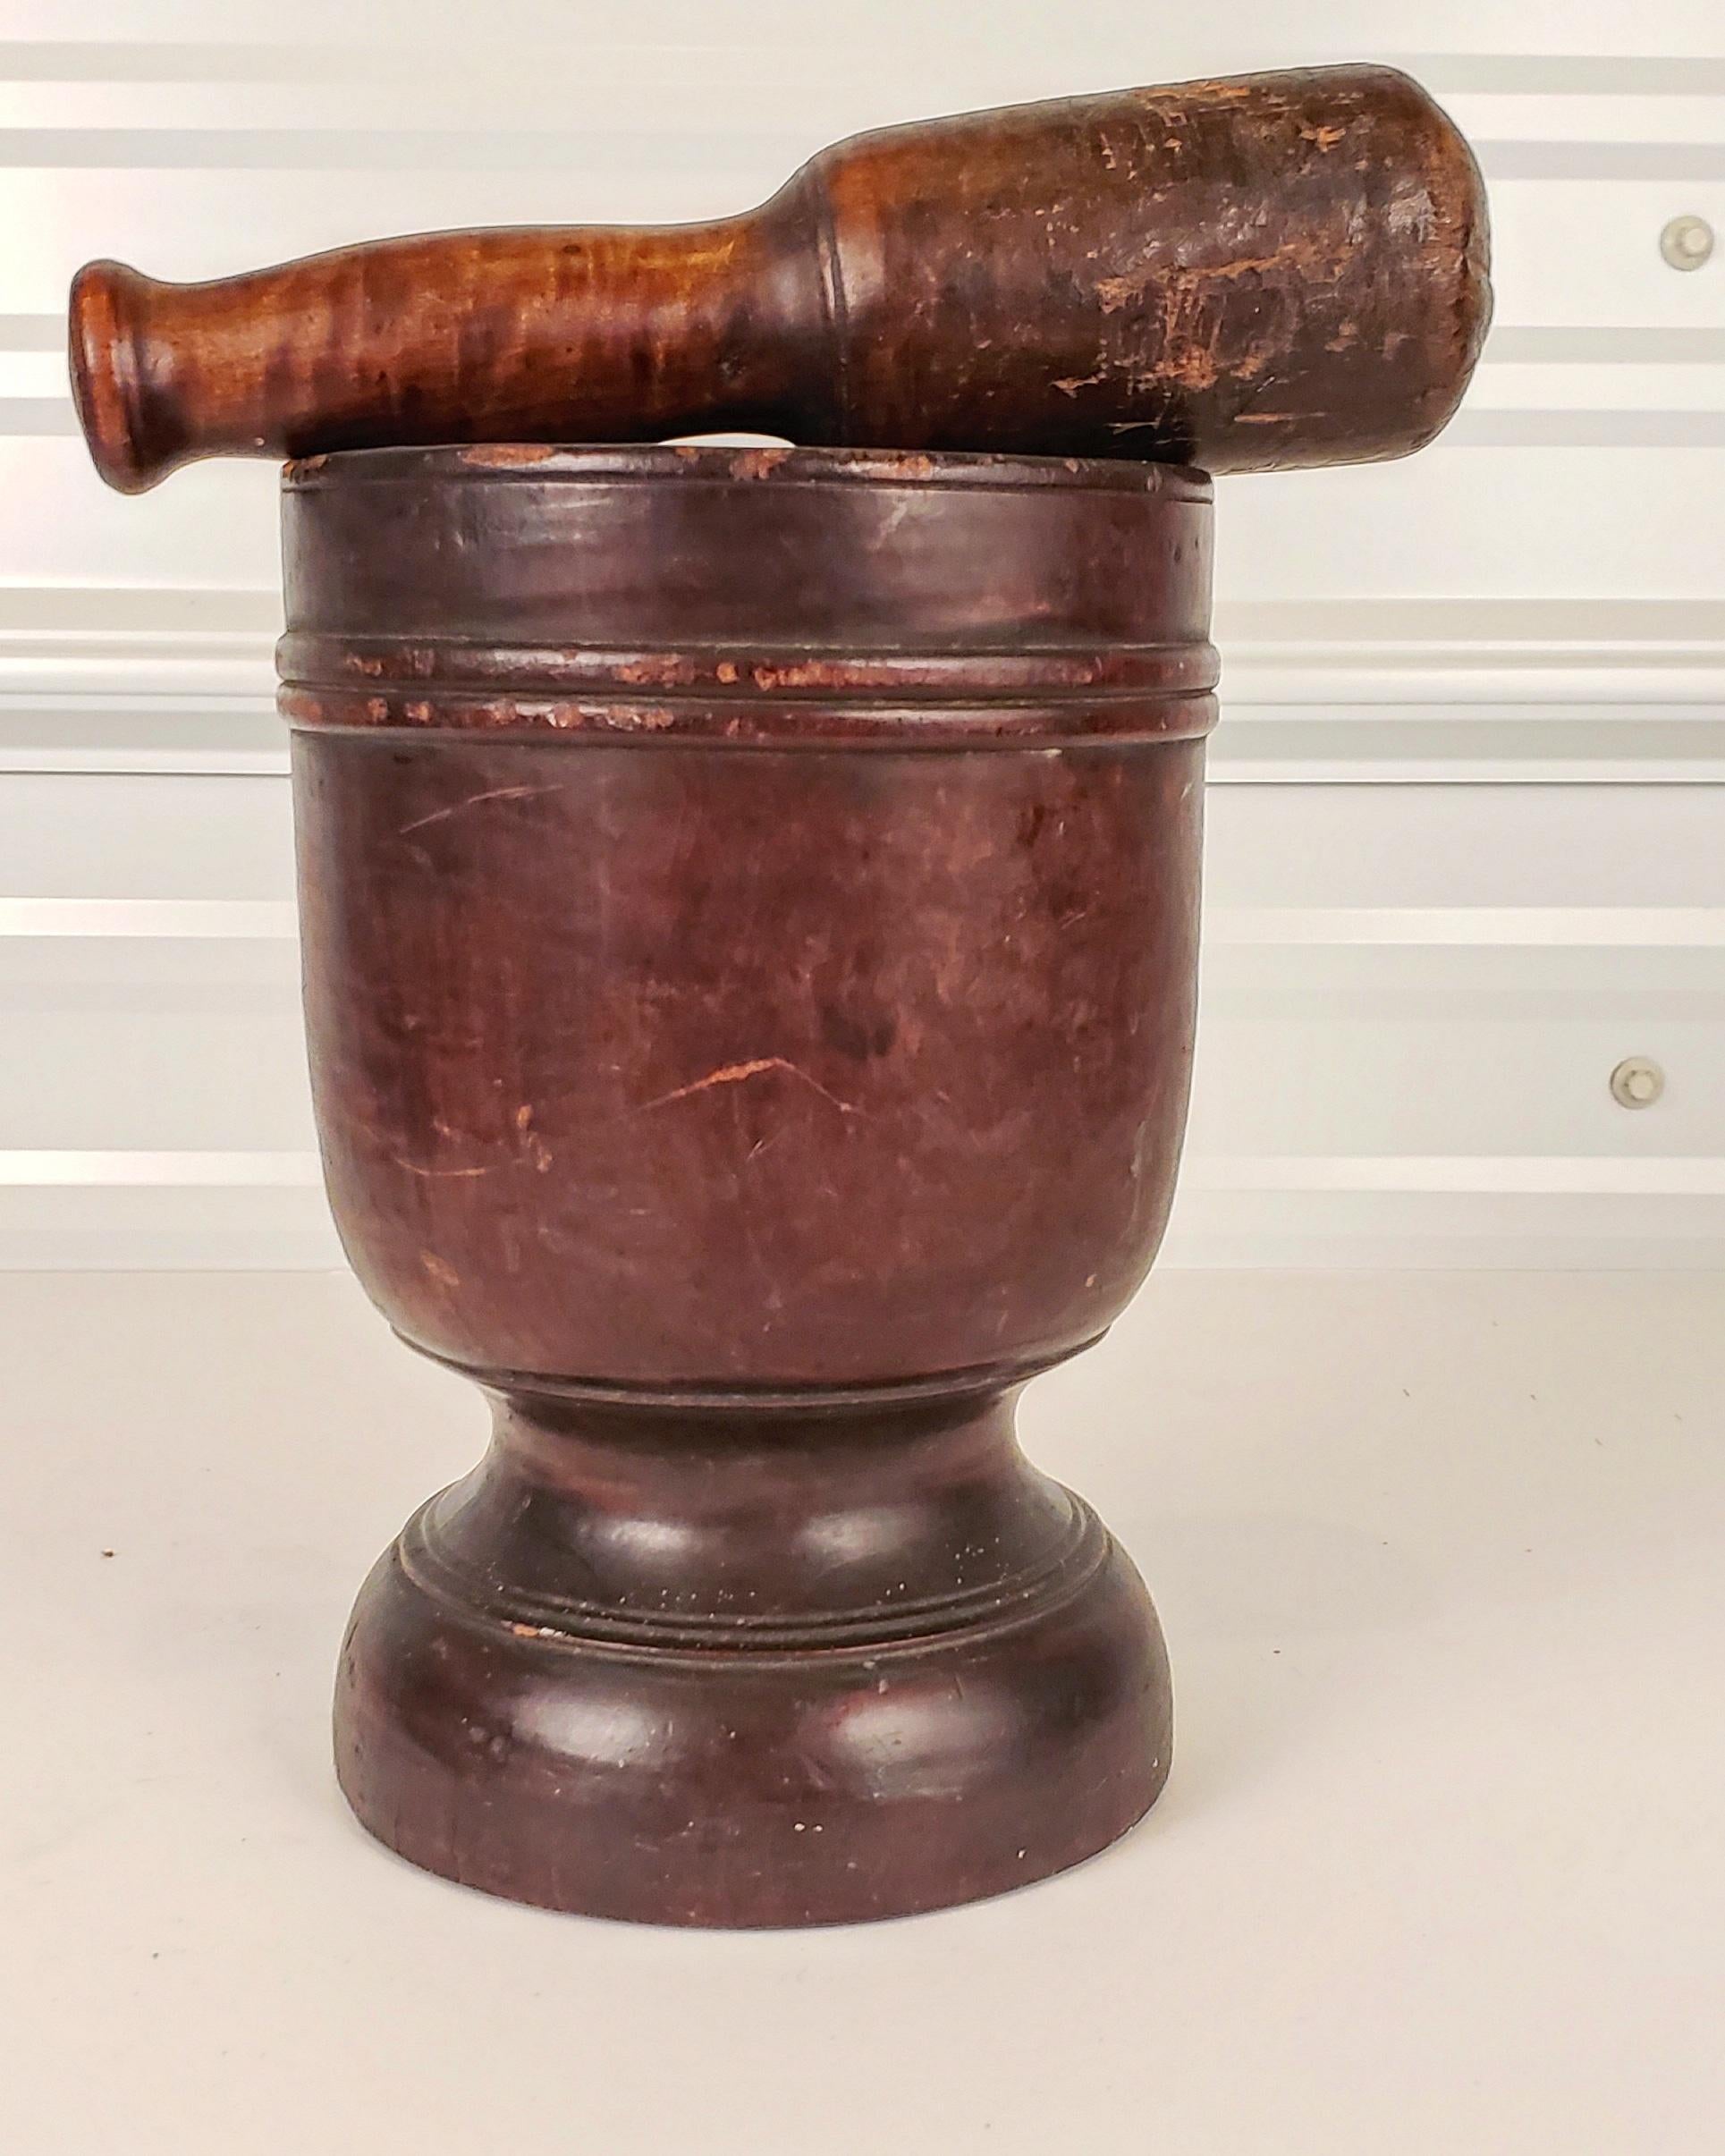 Amerikanischer, hölzerner Mörser und Stößel aus dem späten 18. und frühen 19. Jahrhundert. Der urnenförmige Mörser mit reicher Patina hat eine wunderbare Wärme und Haptik. Der Sockel ist ergonomisch korrekt für das Halten mit der Hand.
Der Stößel